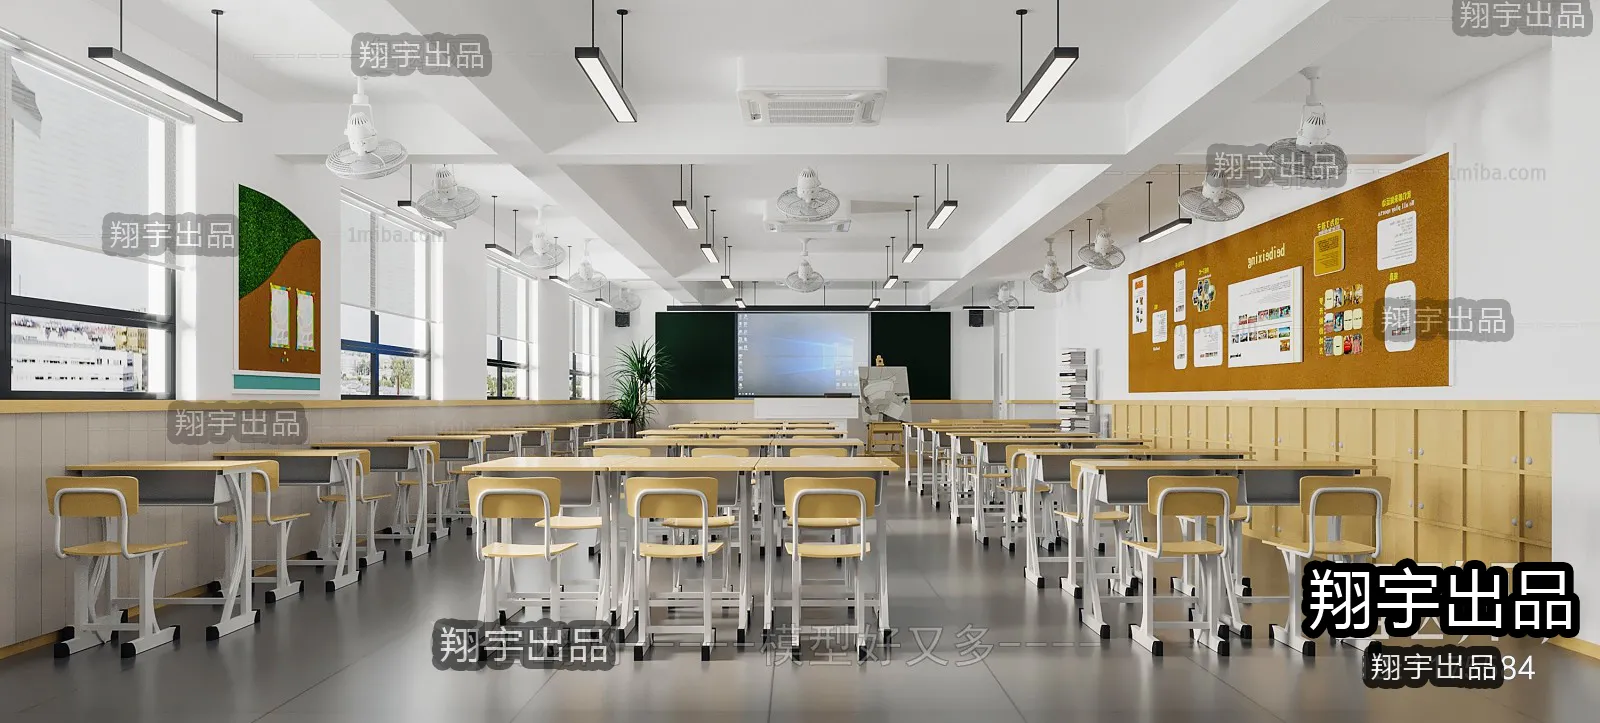 3D SCHOOL INTERIOR (VRAY) – CLASSROOM 3D SCENES – 001